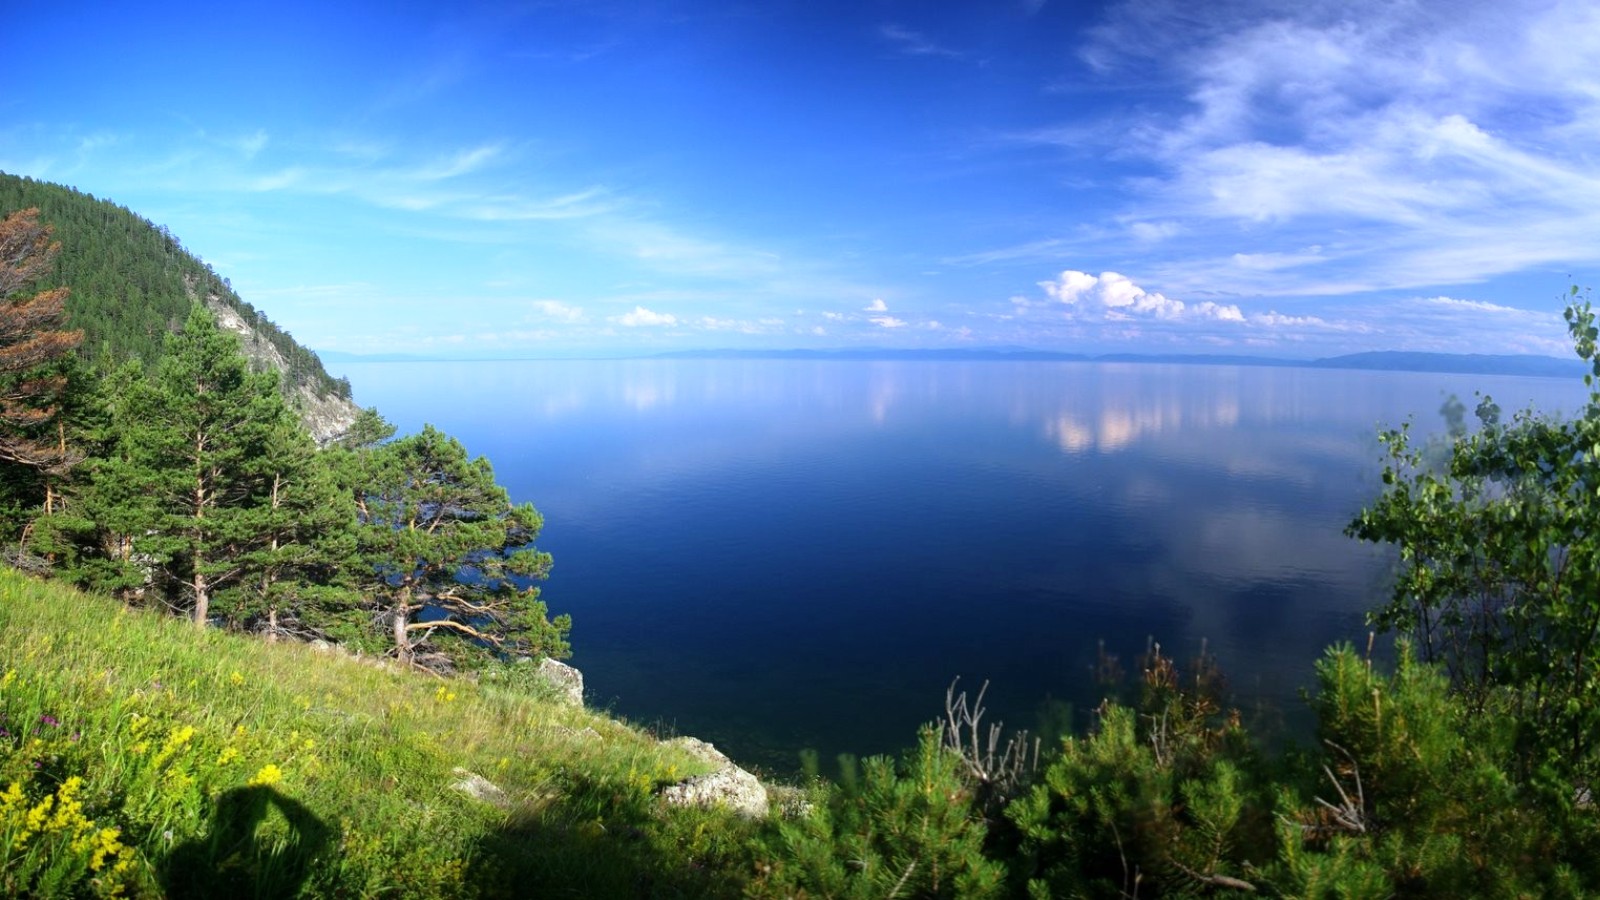 
День озера Байкал
